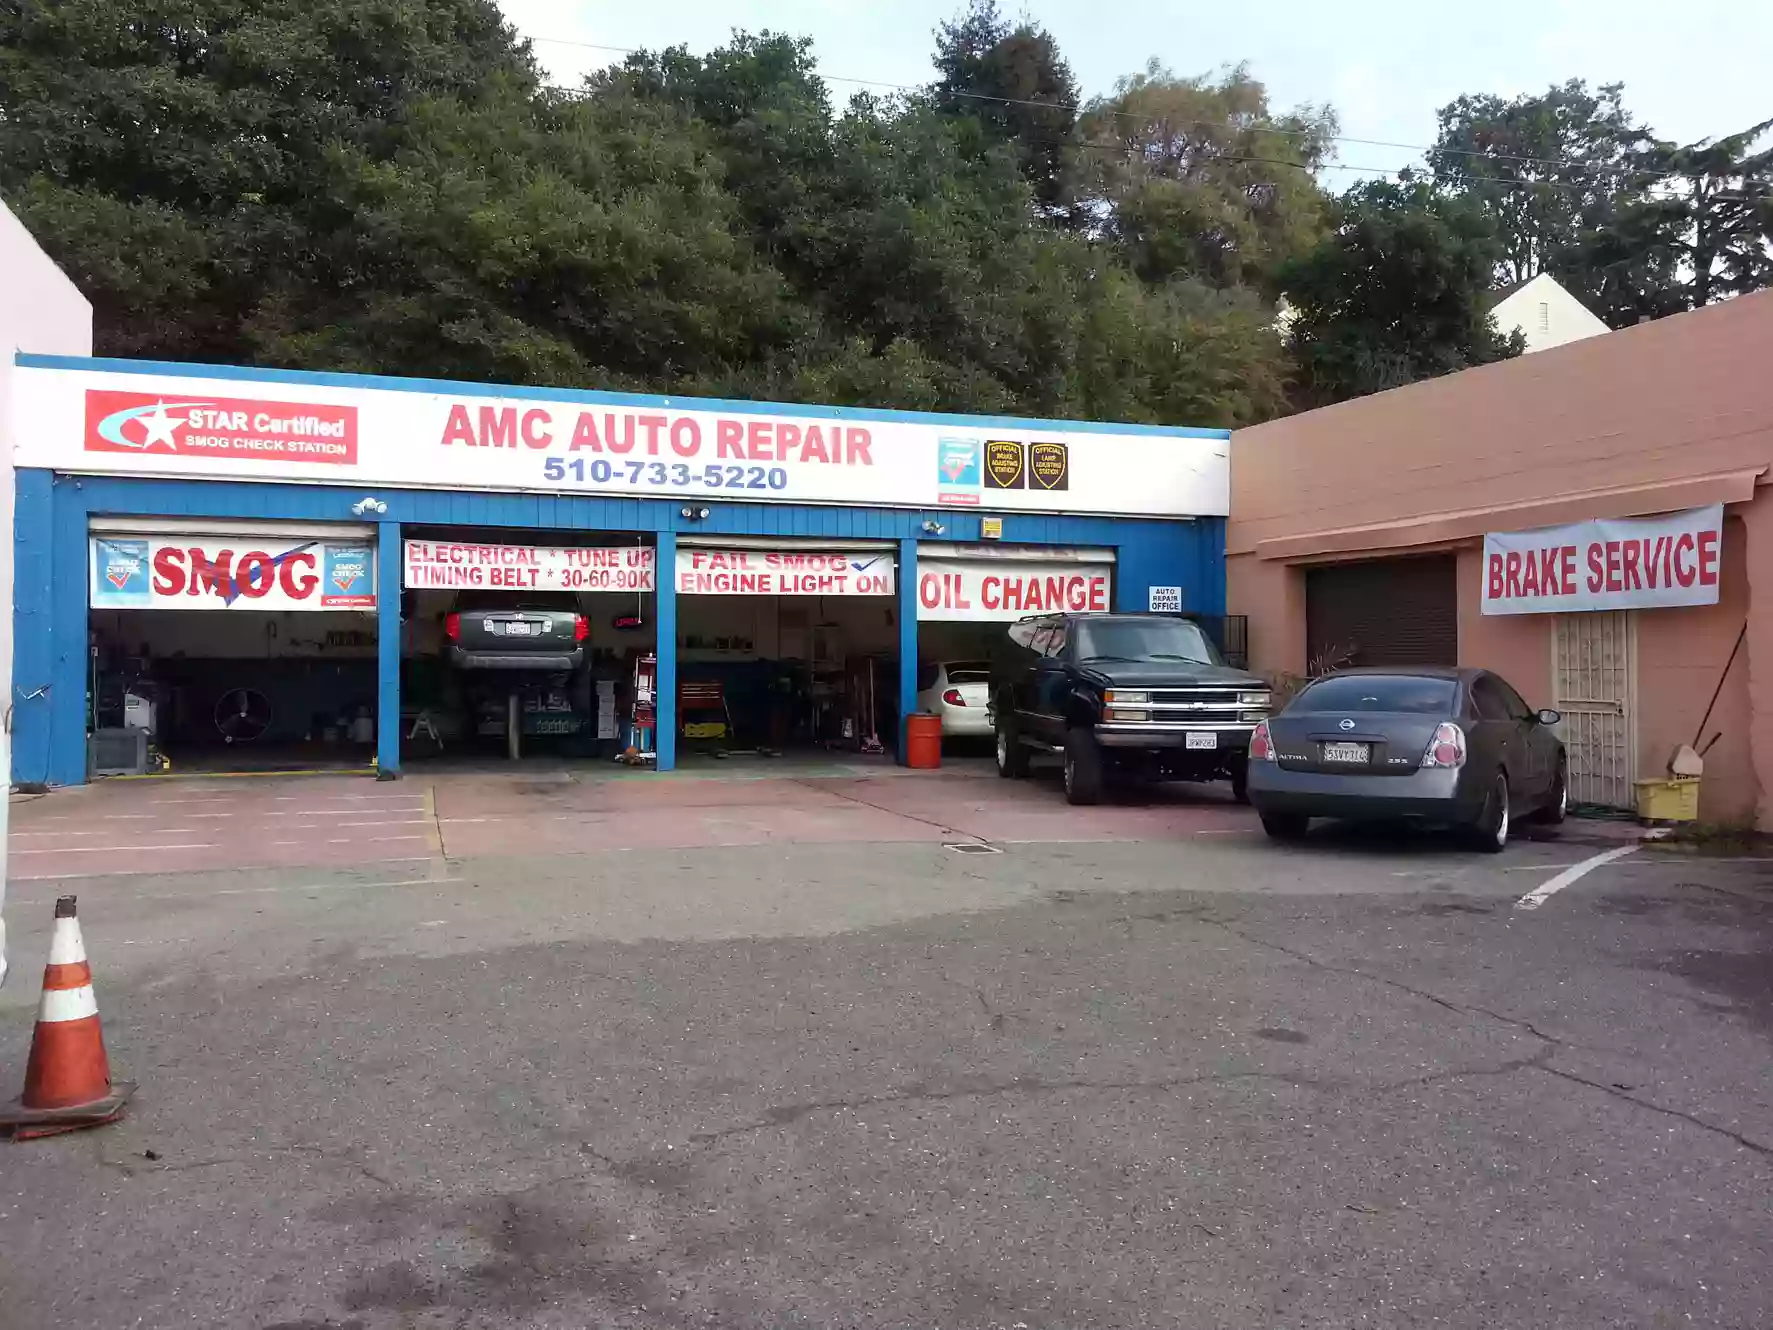 AMC Auto Repair